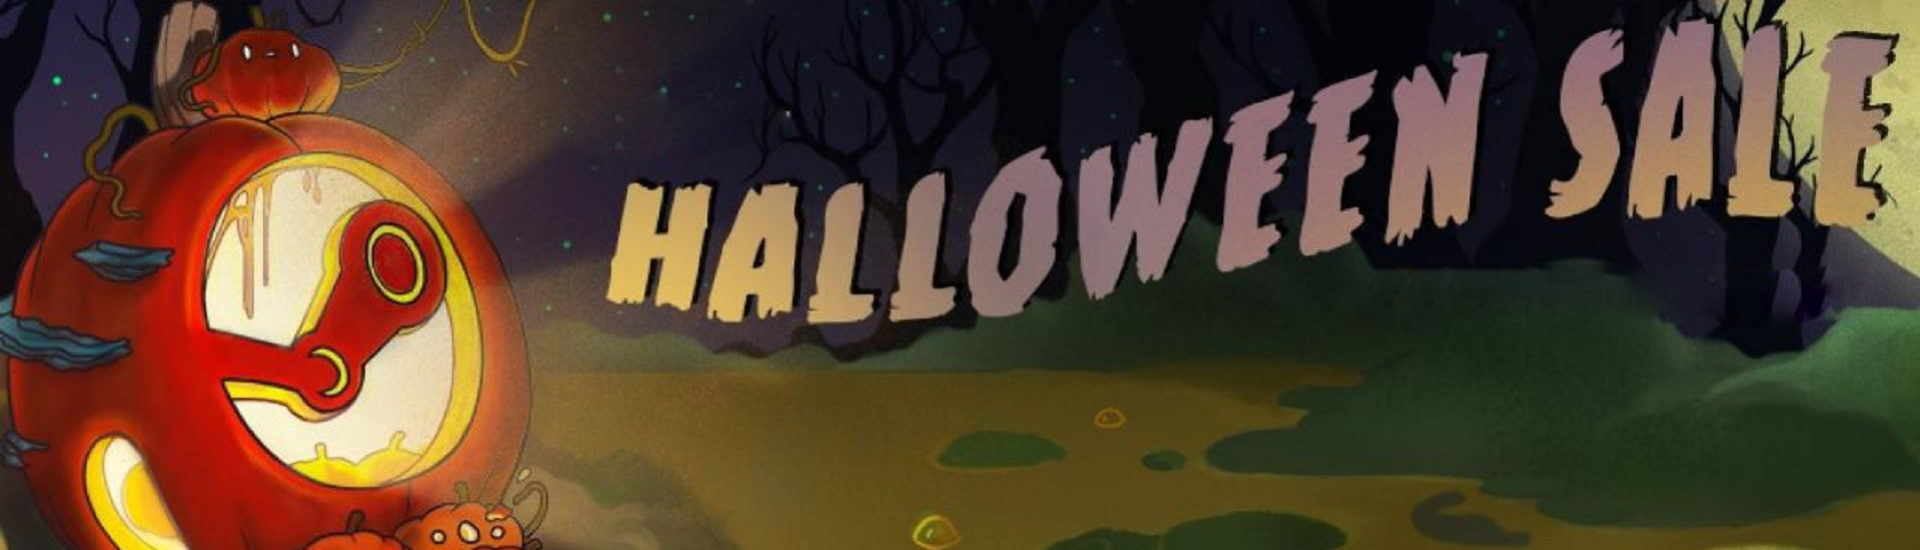 Steam Halloween Sale: Alle Infos zum gruseligen Shoppingerlebnis